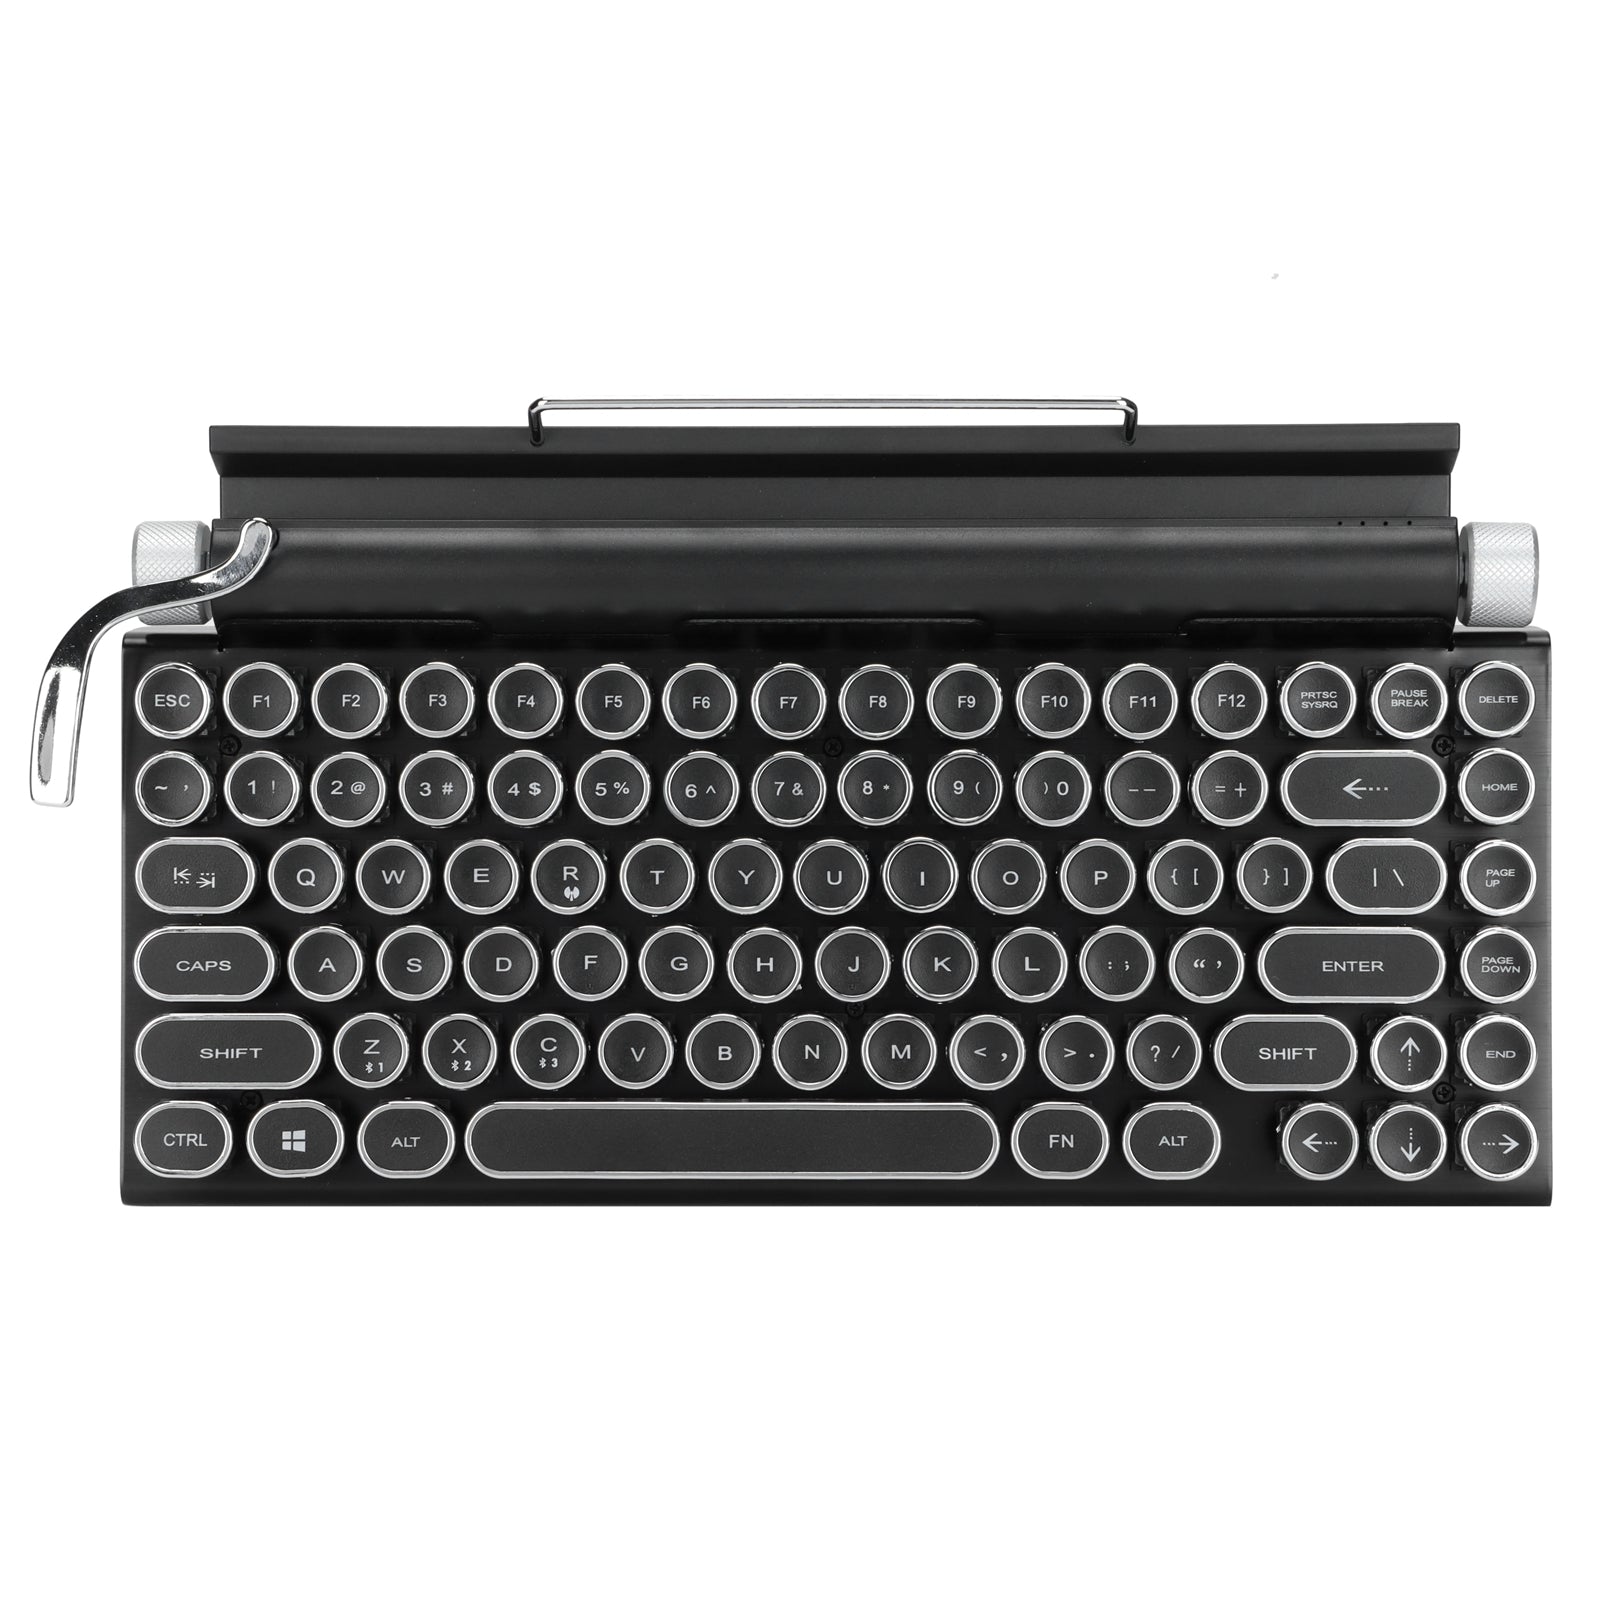  Retro Typewriter Keyboard has anti-ghosting technology